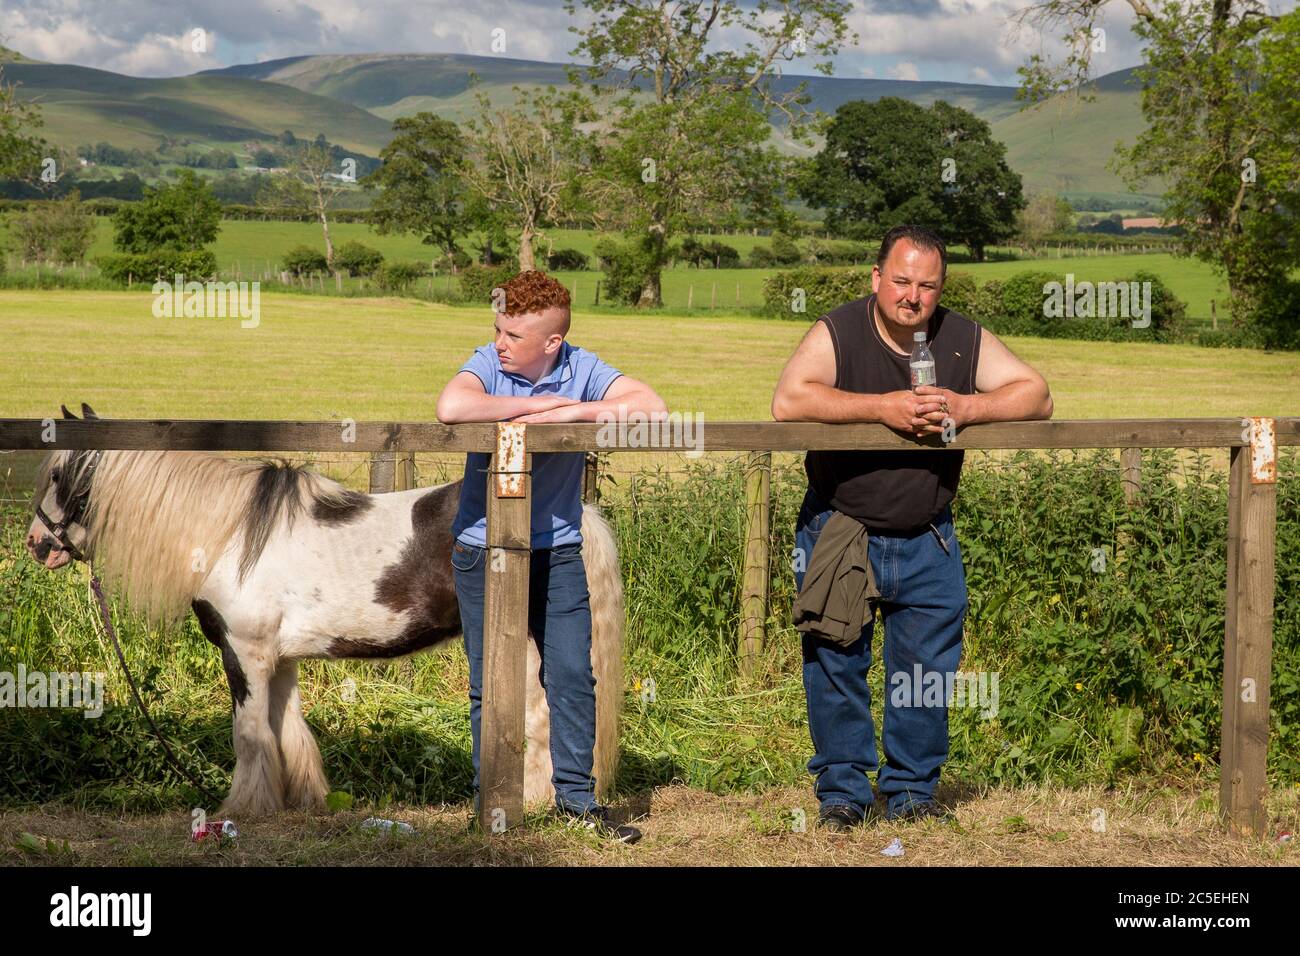 Appleby Horse Fair, Cumbria. Ein Treffen von Zigeunern und Reisenden in Appleby-in-Westmorland 2019. Die Pferdehändler reisen aus ganz Großbritannien. Stockfoto